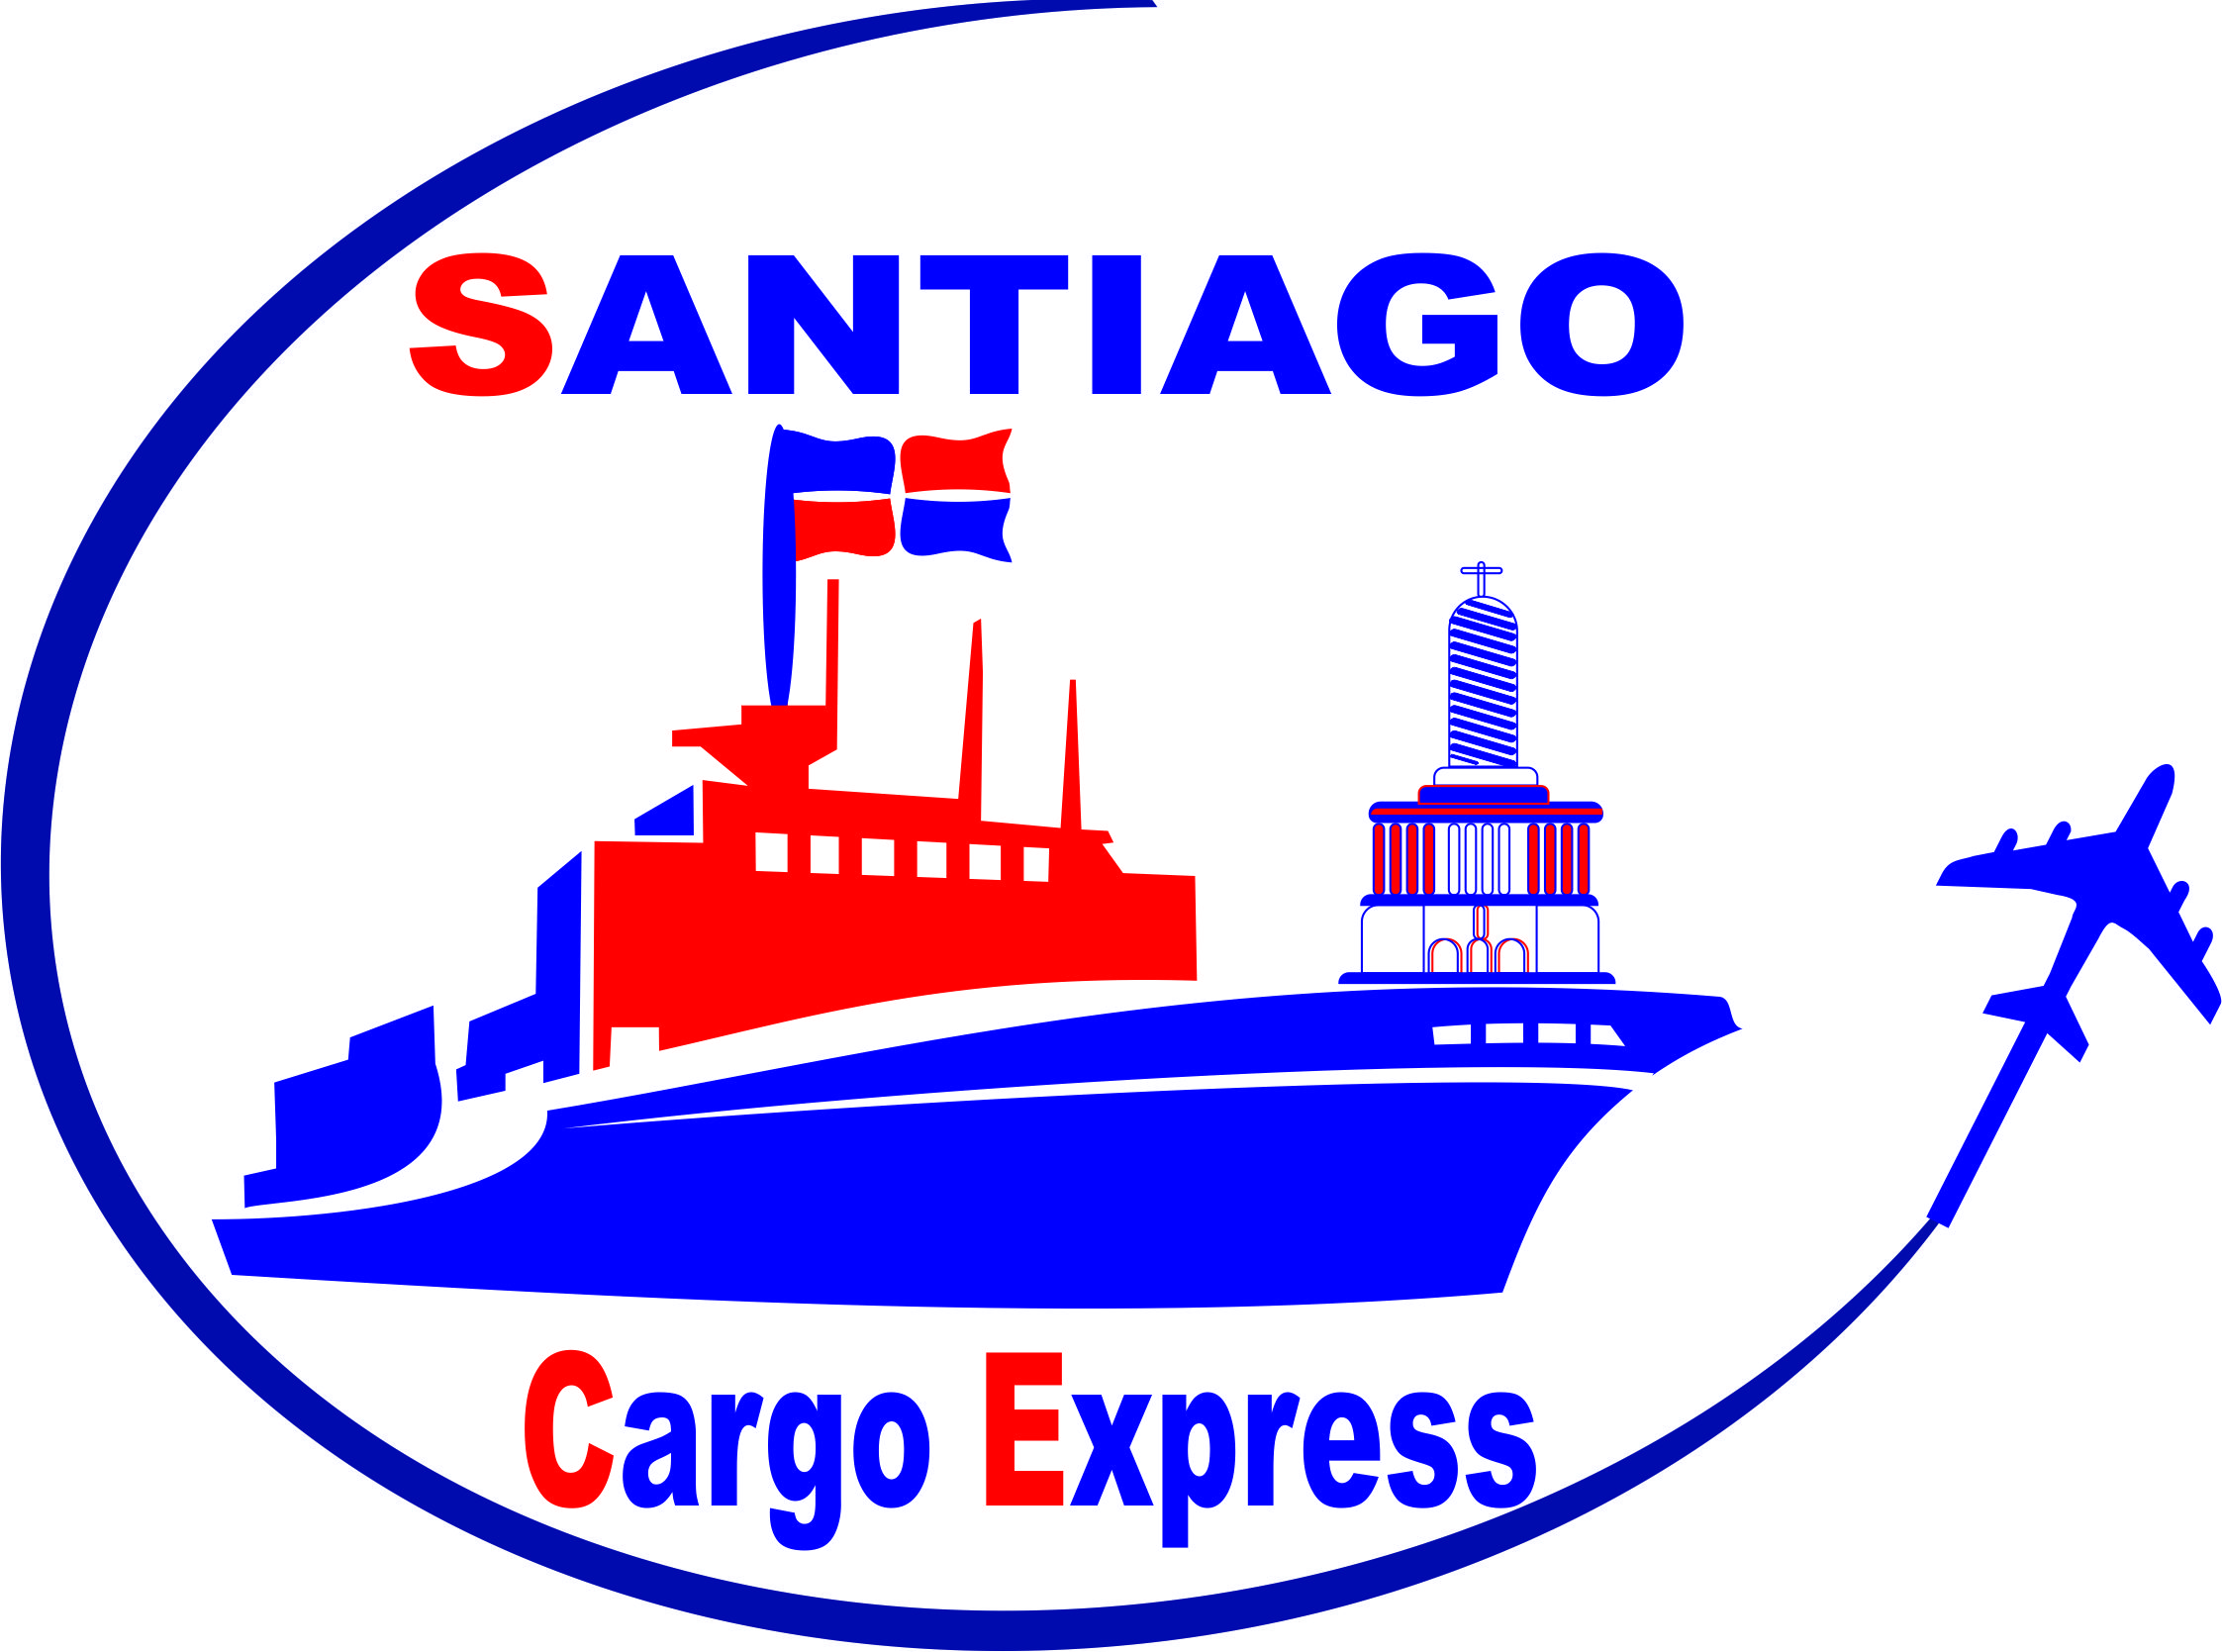 Santiago Cargo Express